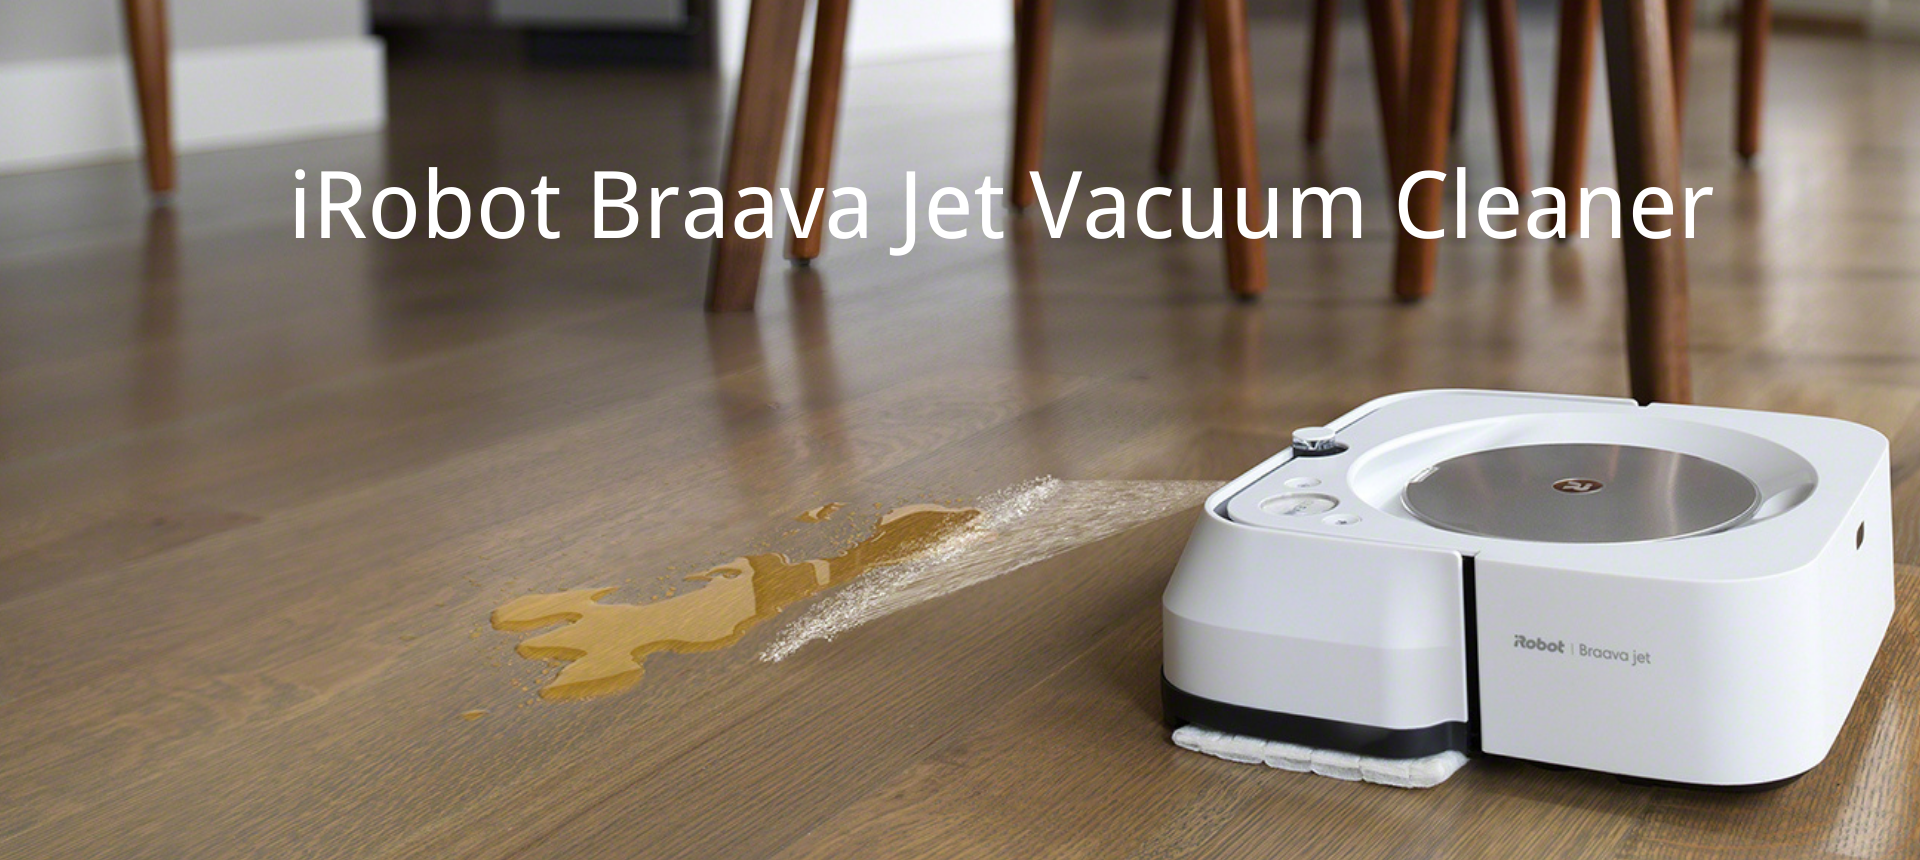 Irobot Braava Jet Review Vacuum Cleaner, Robot Hardwood Floor Cleaner Reviews